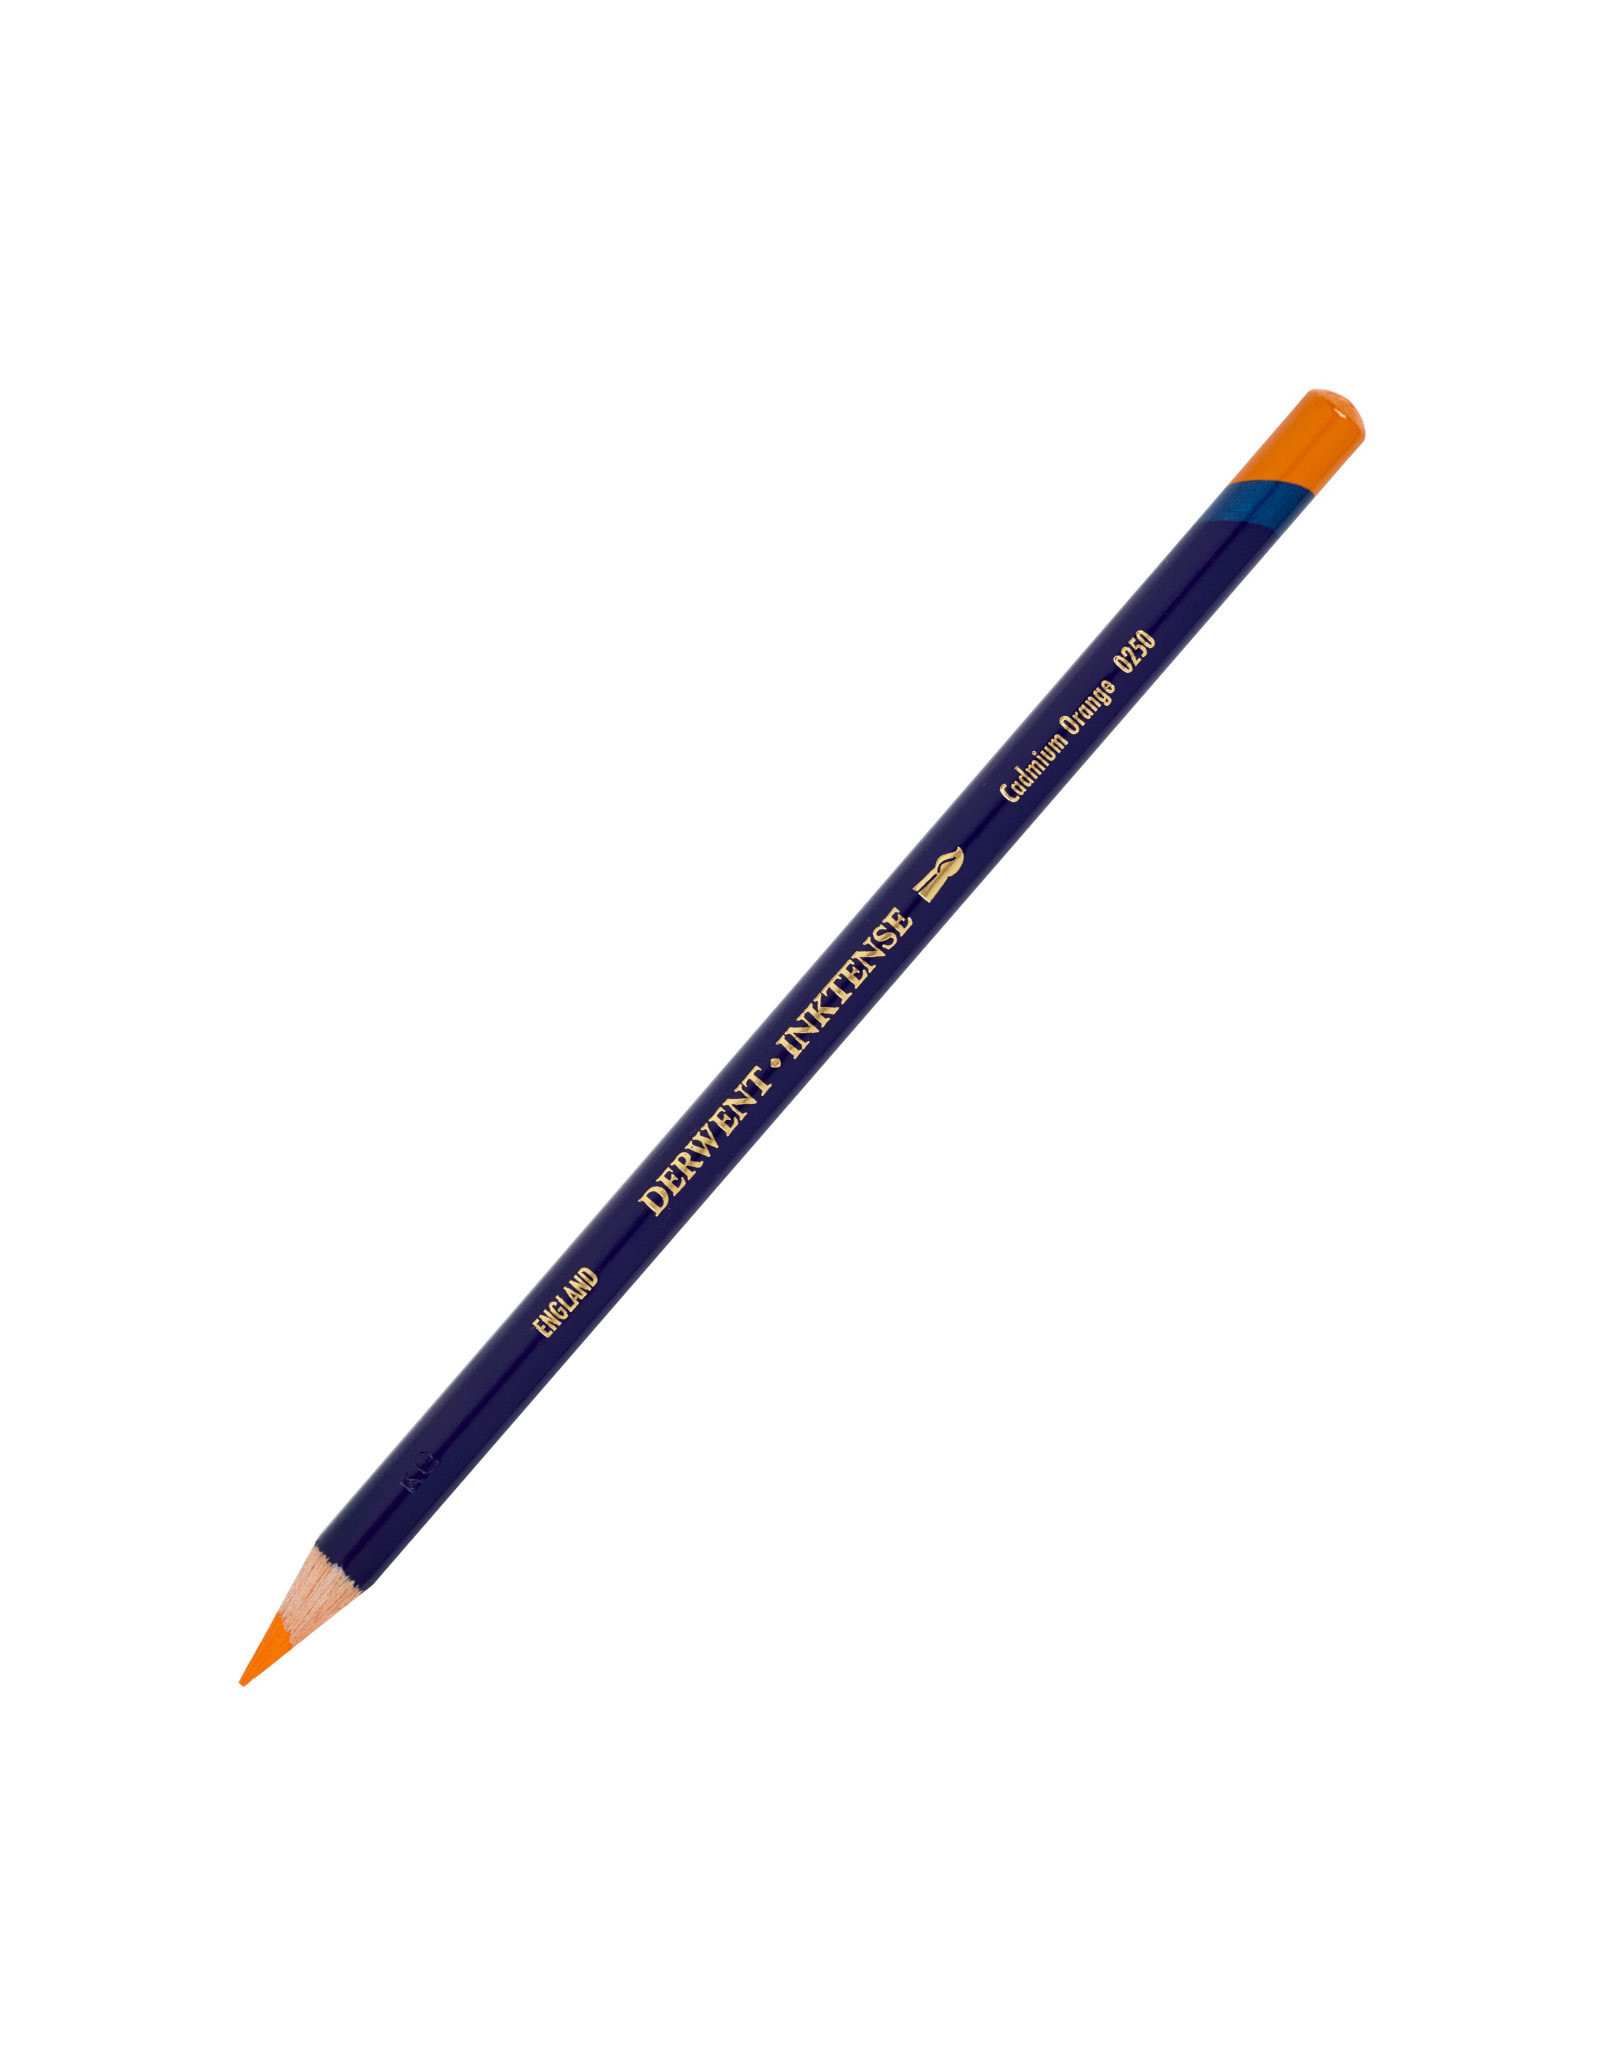 Derwent Derwent Inktense Pencil, Cadium Orange